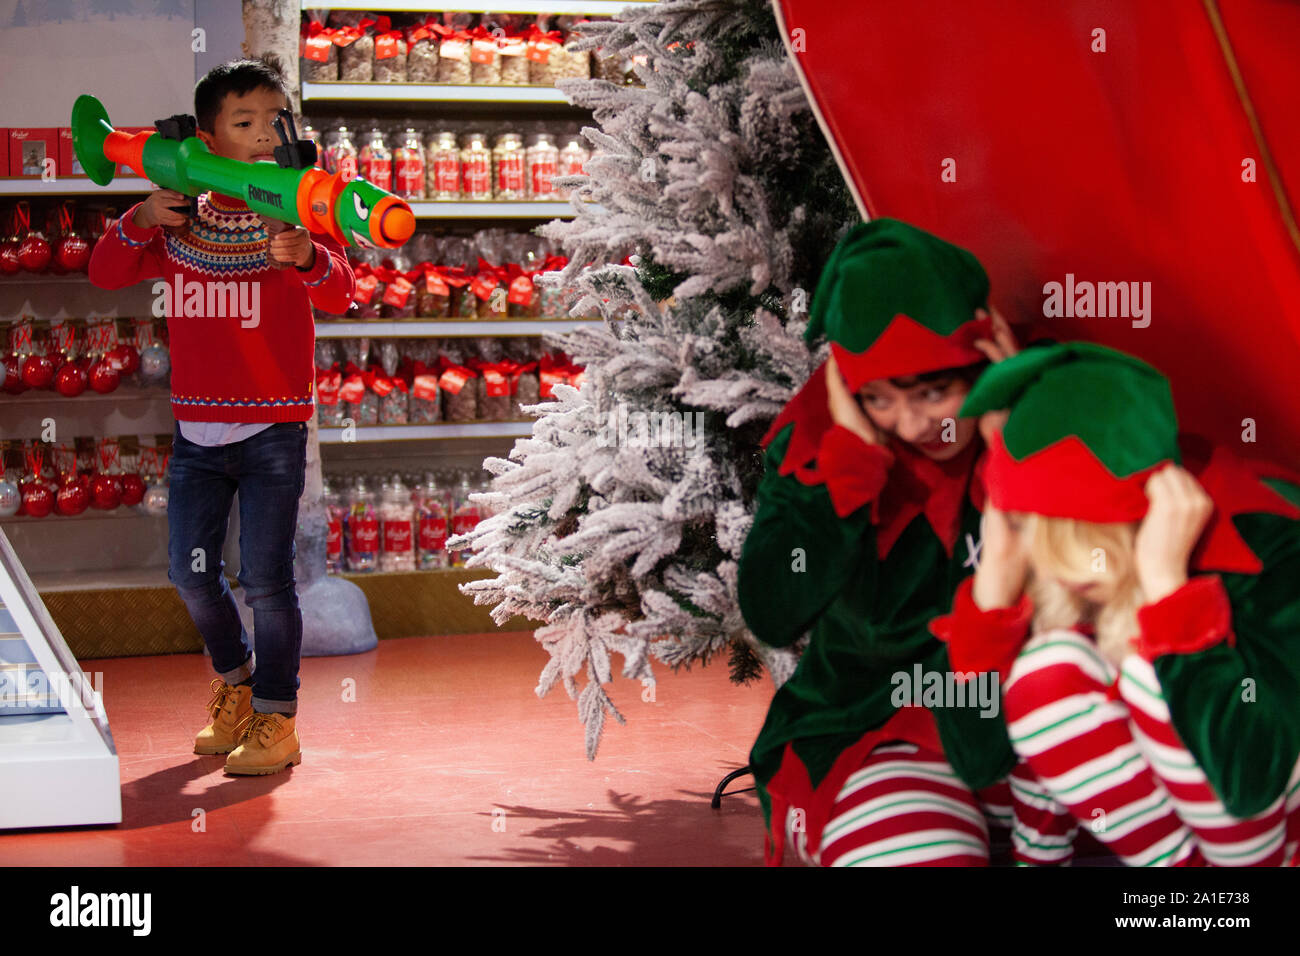 Einige glückliche Kinder erhielten eine Reise nach Hamleys für den Start  Ihrer 10 Spielzeug für Weihnachten auf der Regent Street. Hier James, 6  Jahre, jagt sie einige Elfen mit einem Nerf Fortnite